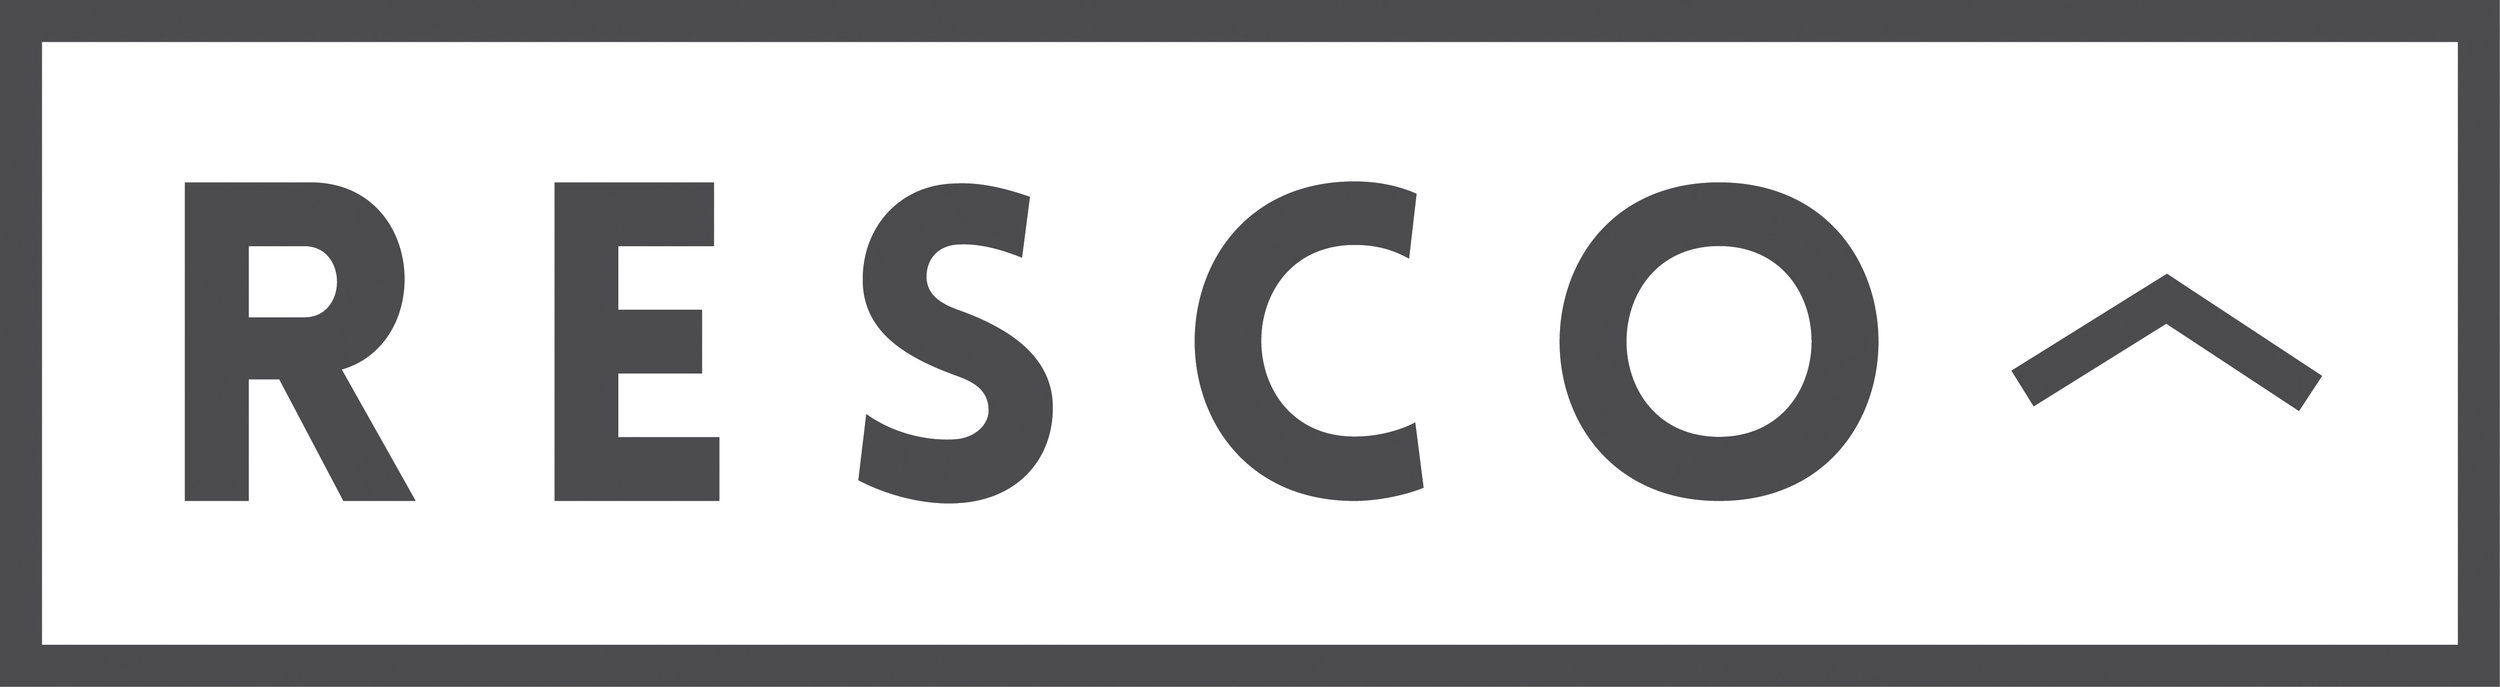 SDG-8---Resco-logo-grey.jpg